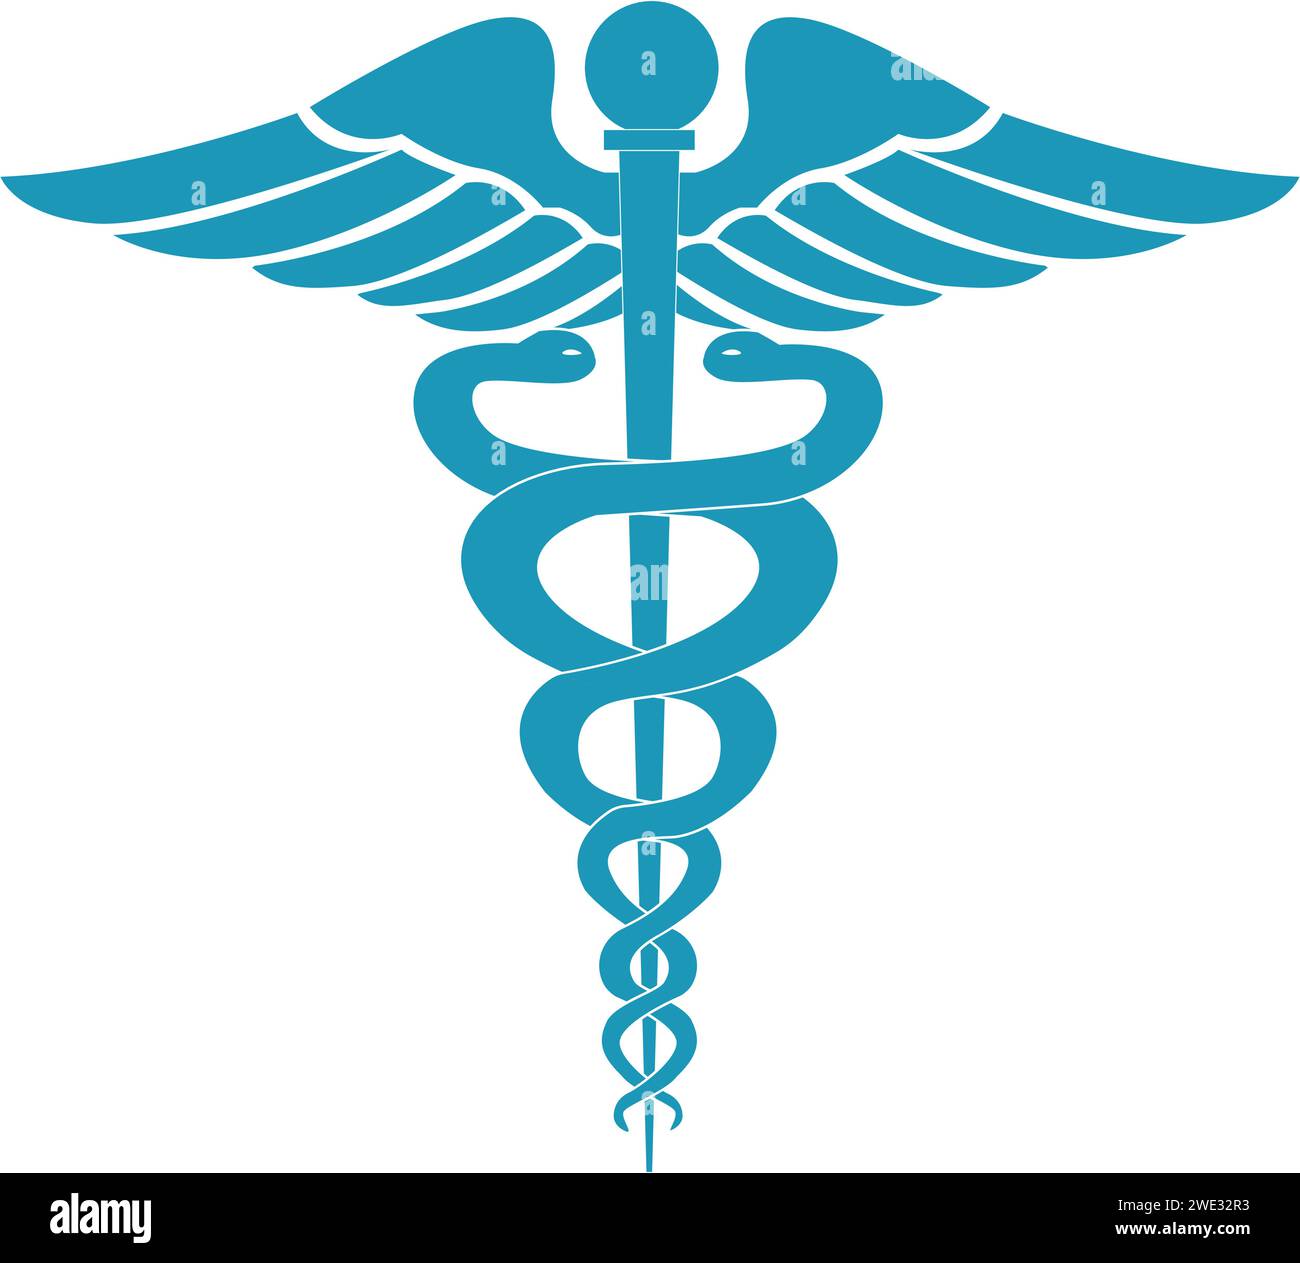 Medical sign, Medical symbol, Medical Snake Caduceus Logo, Caduceus sign, caduceus - medical symbol, Snake medical icon Blue Stock Vector